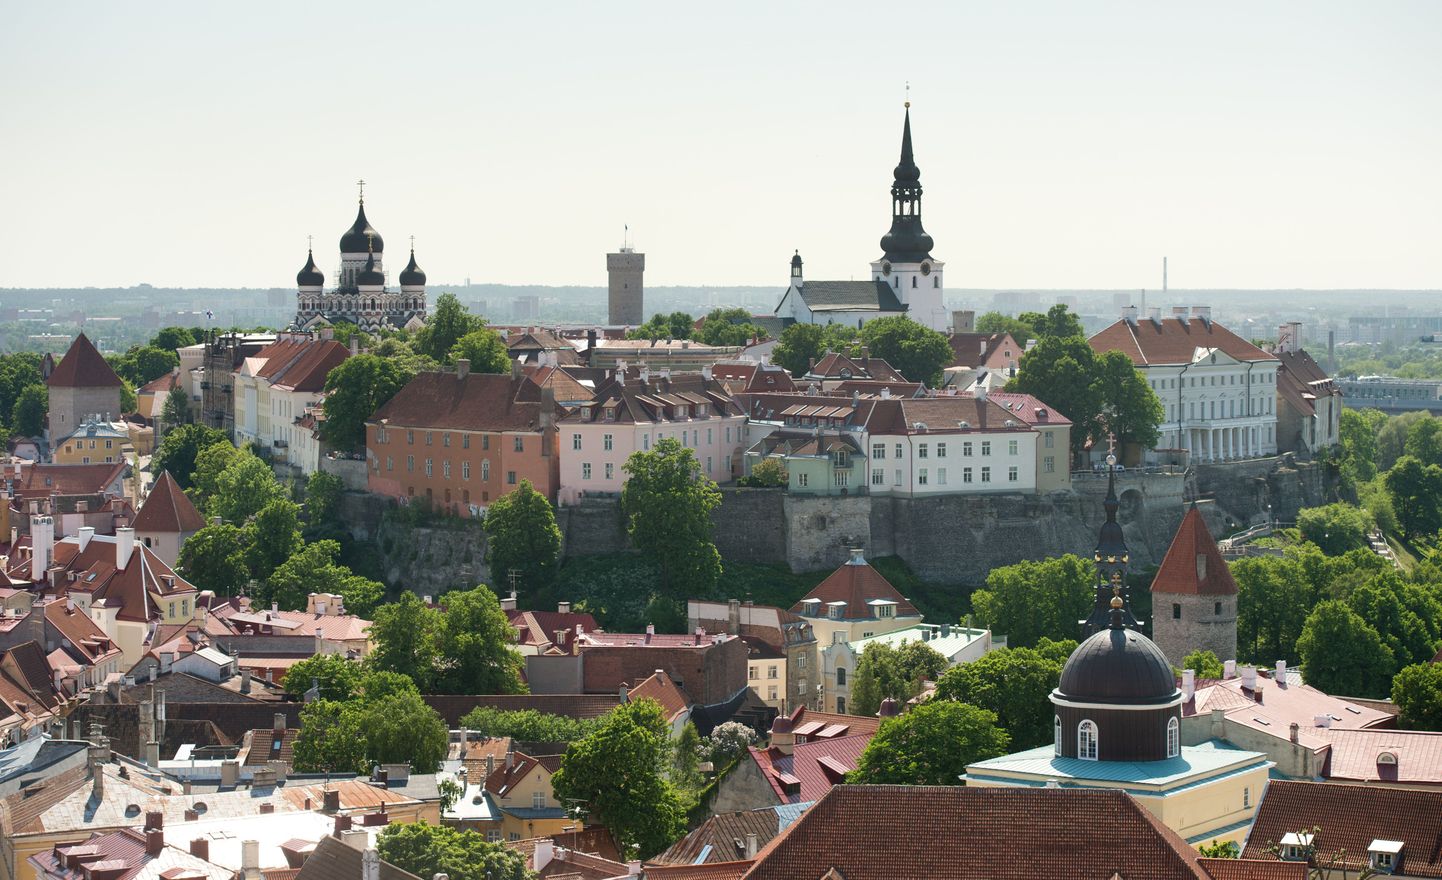 Tallinna südalinn. Pildil Oleviste kiriku tornist. Toompea.